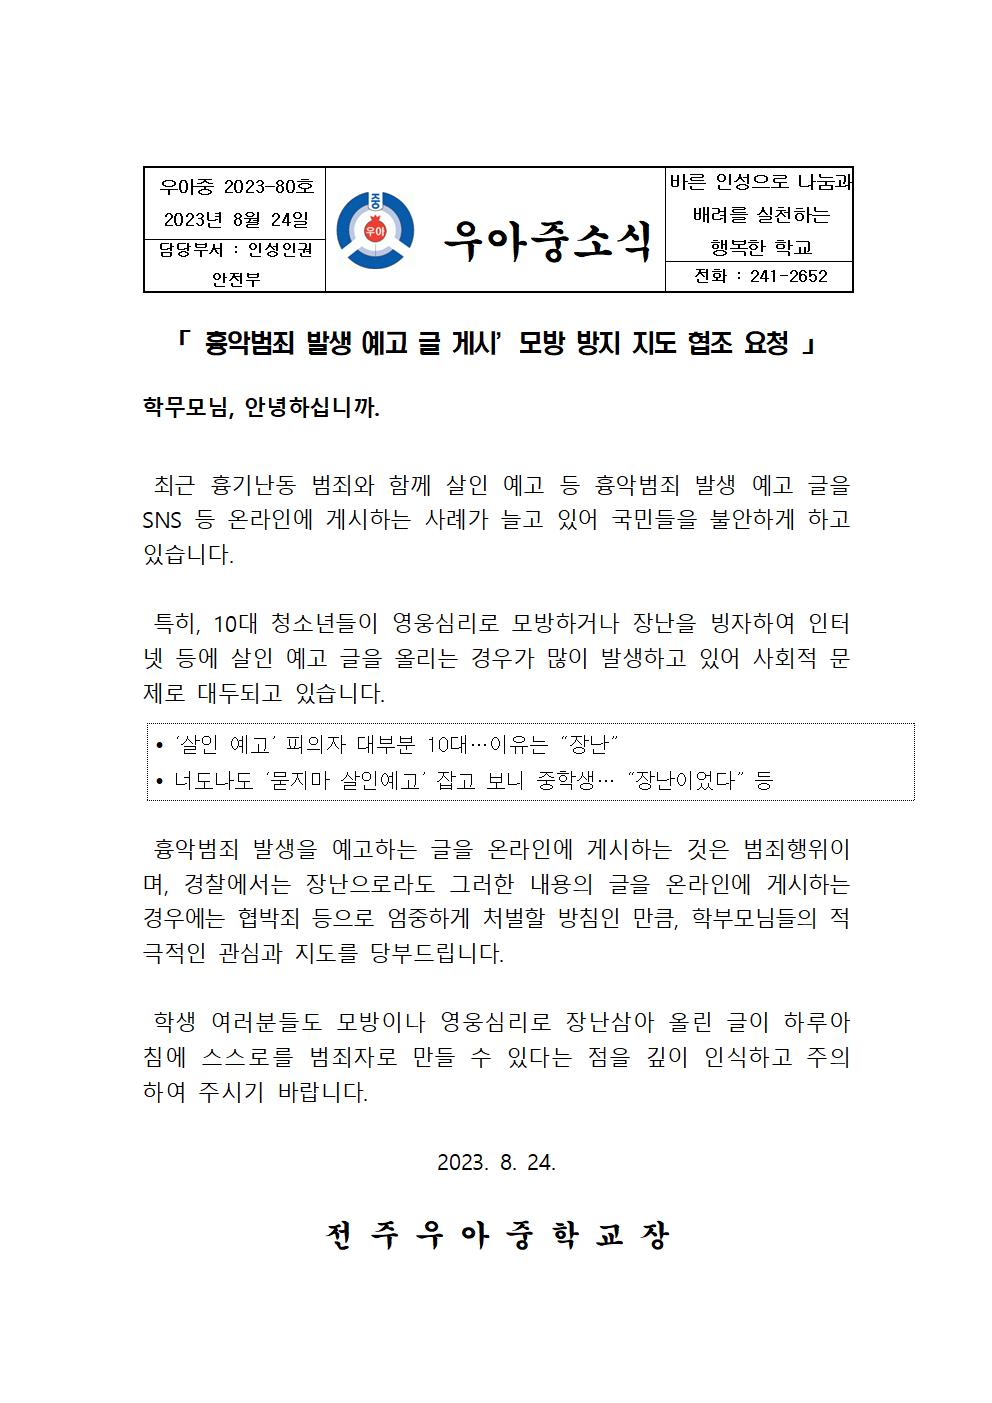 흉악범죄 발생 모방방지 지도 협조요청  가정통신문001